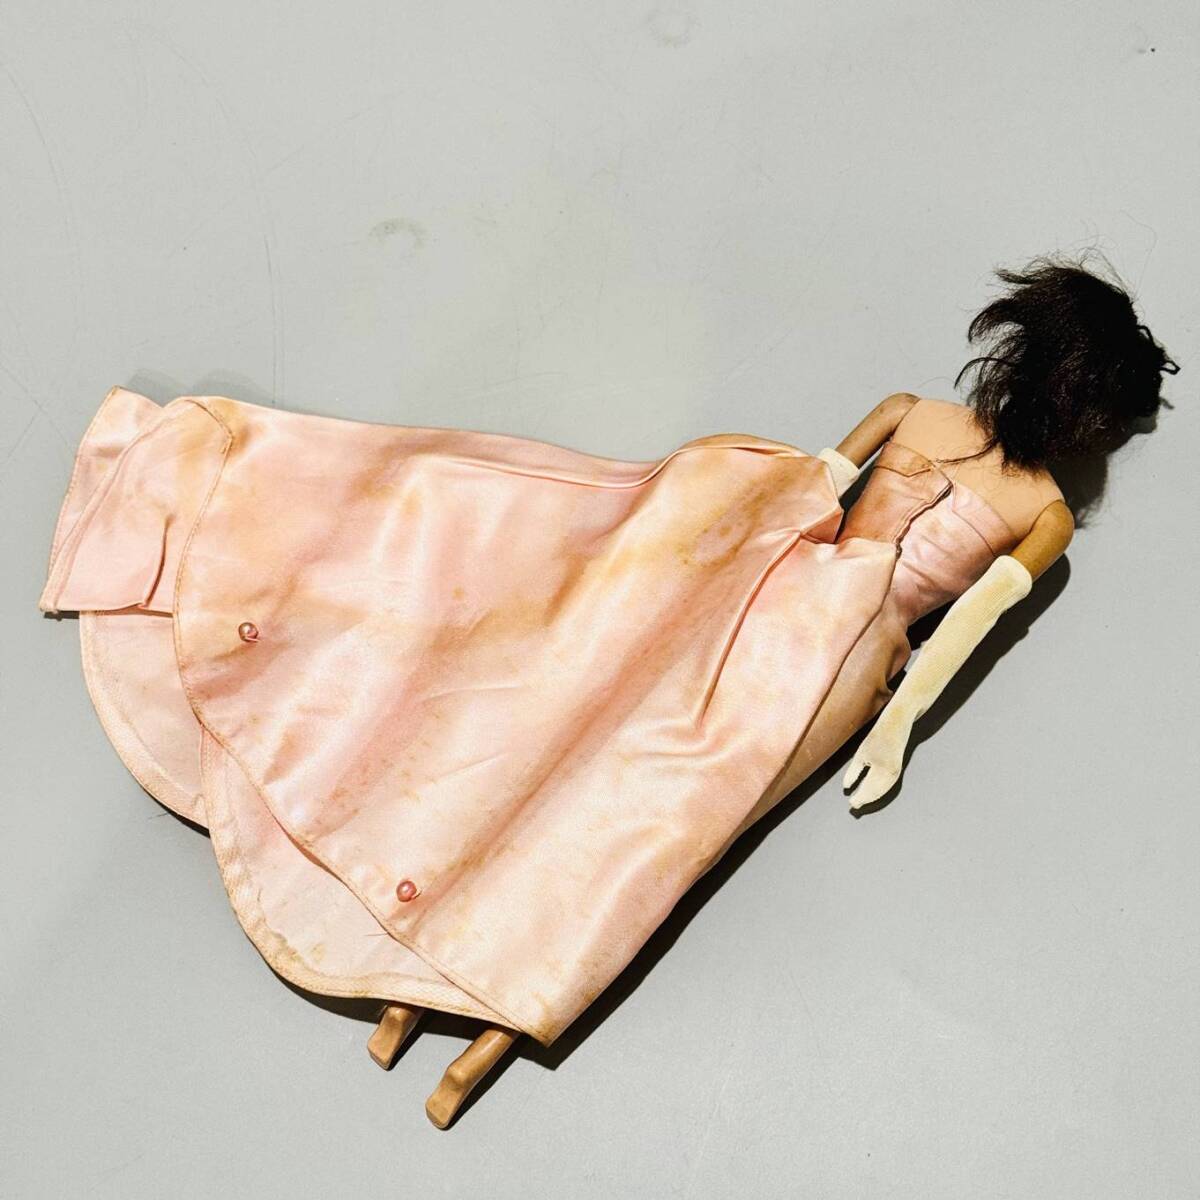 甲MJ17461 1円スタート 希少 1958年製 昭和レトロ 当時物 アンティーク ヴィンテージ JAPAN刻印 マテル社製 バービー人形の画像6